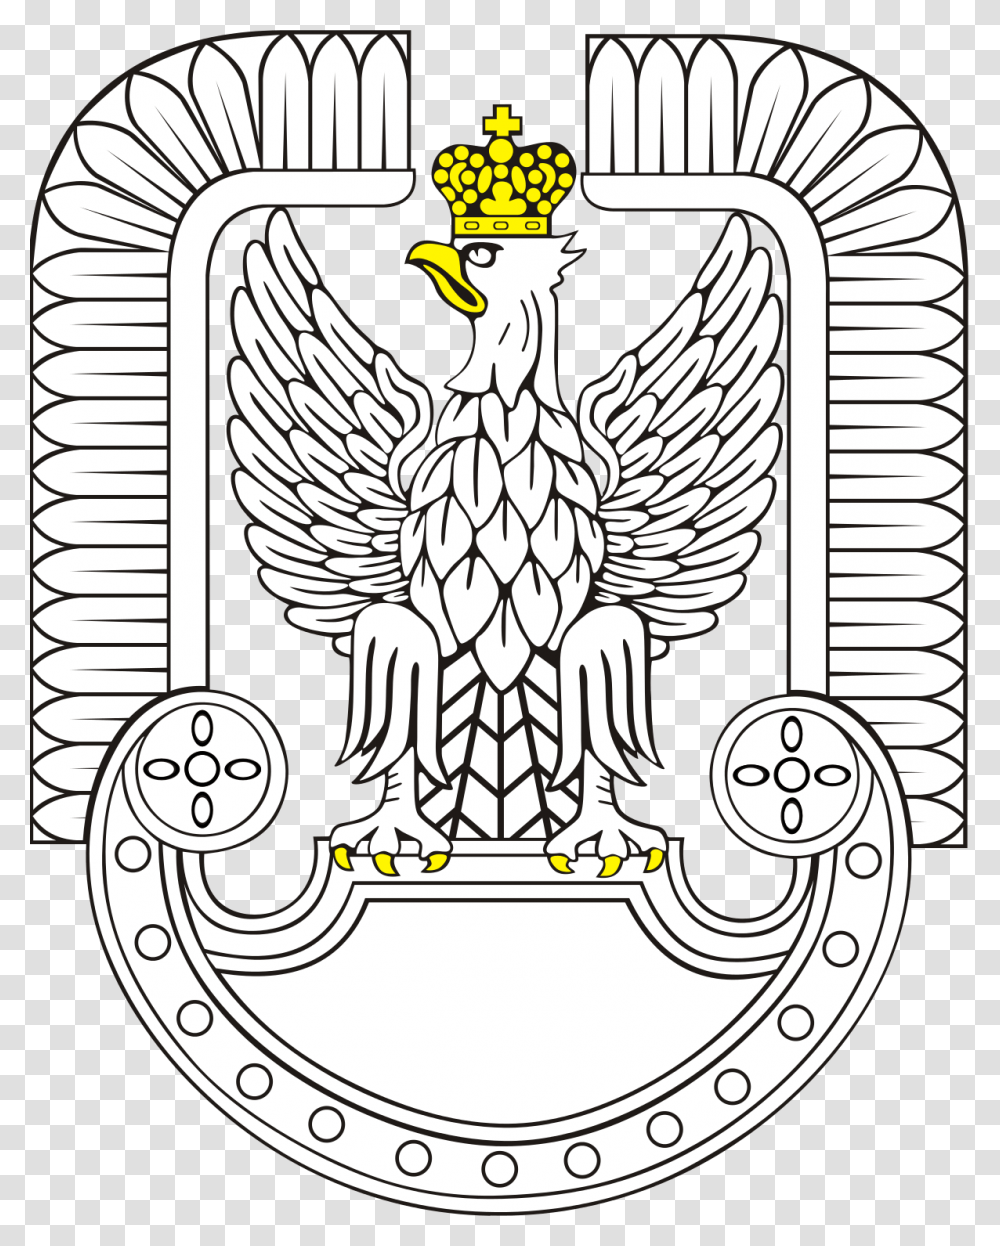 Polish Land Forces, Emblem, Logo, Trademark Transparent Png